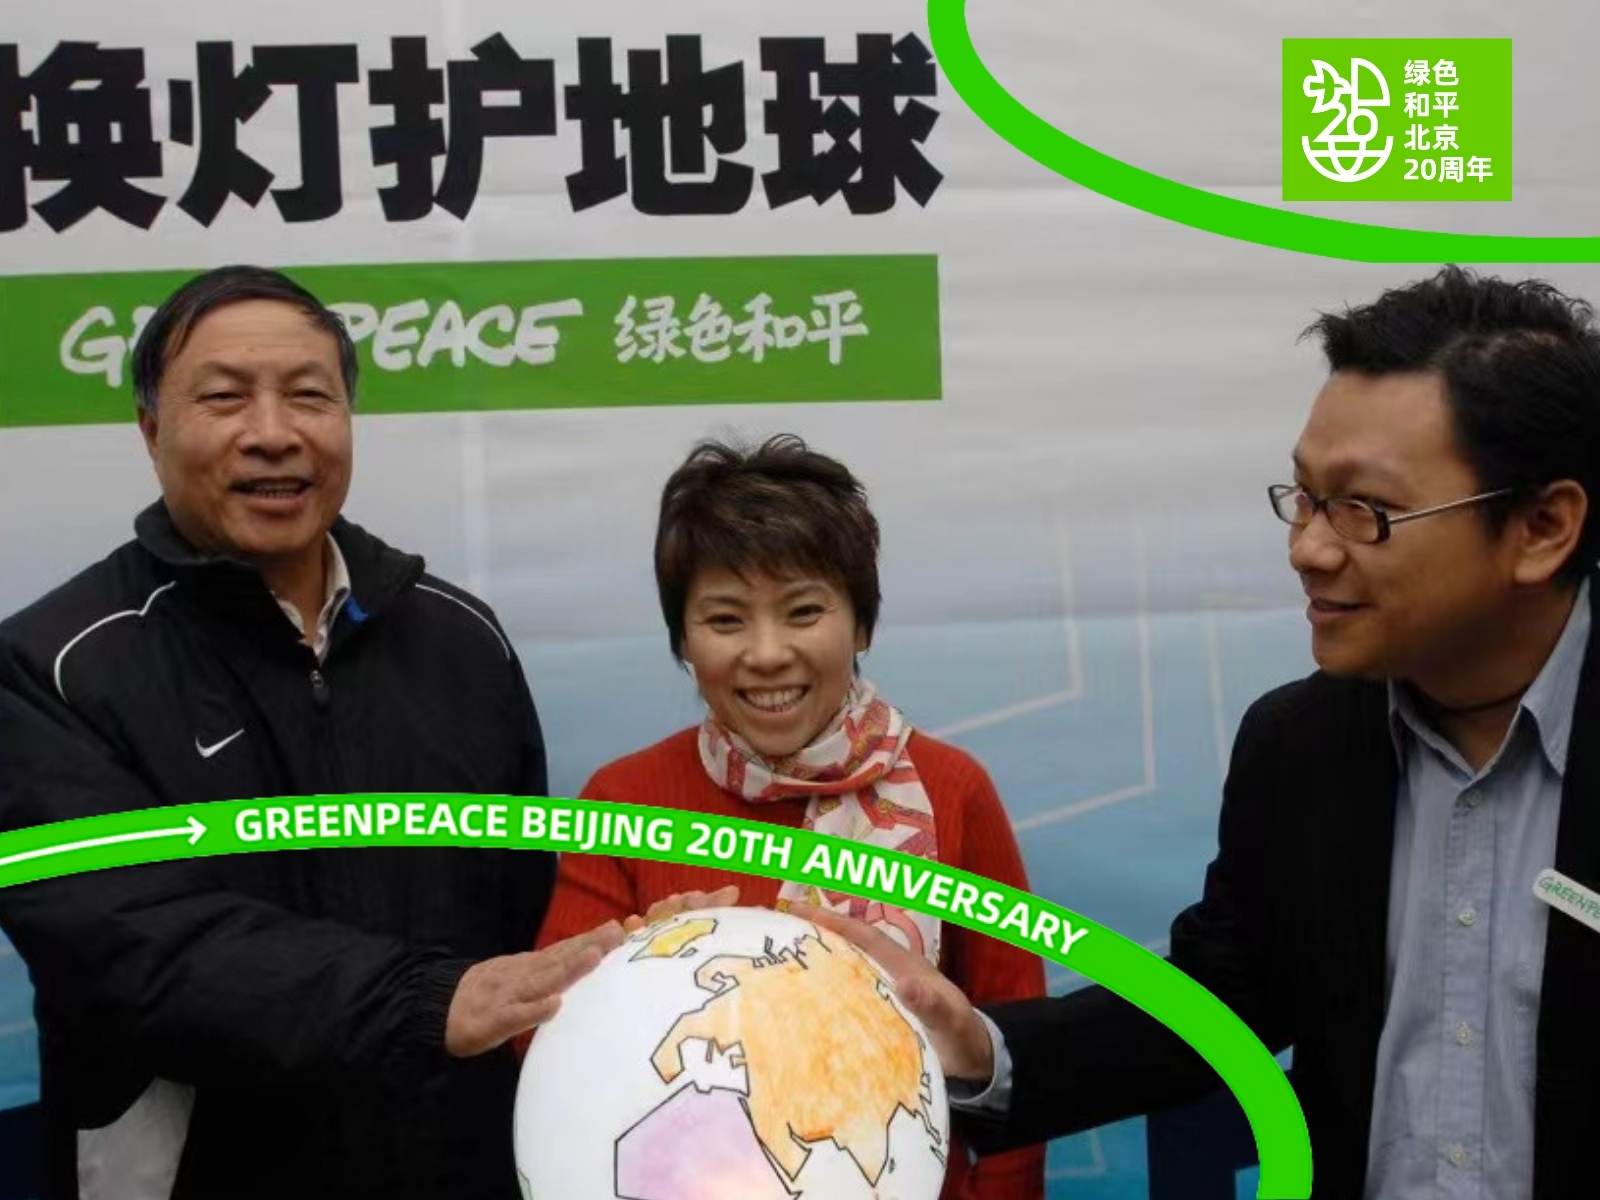 两场北京奥运背后的环保力量 | 绿色和平经典回顾